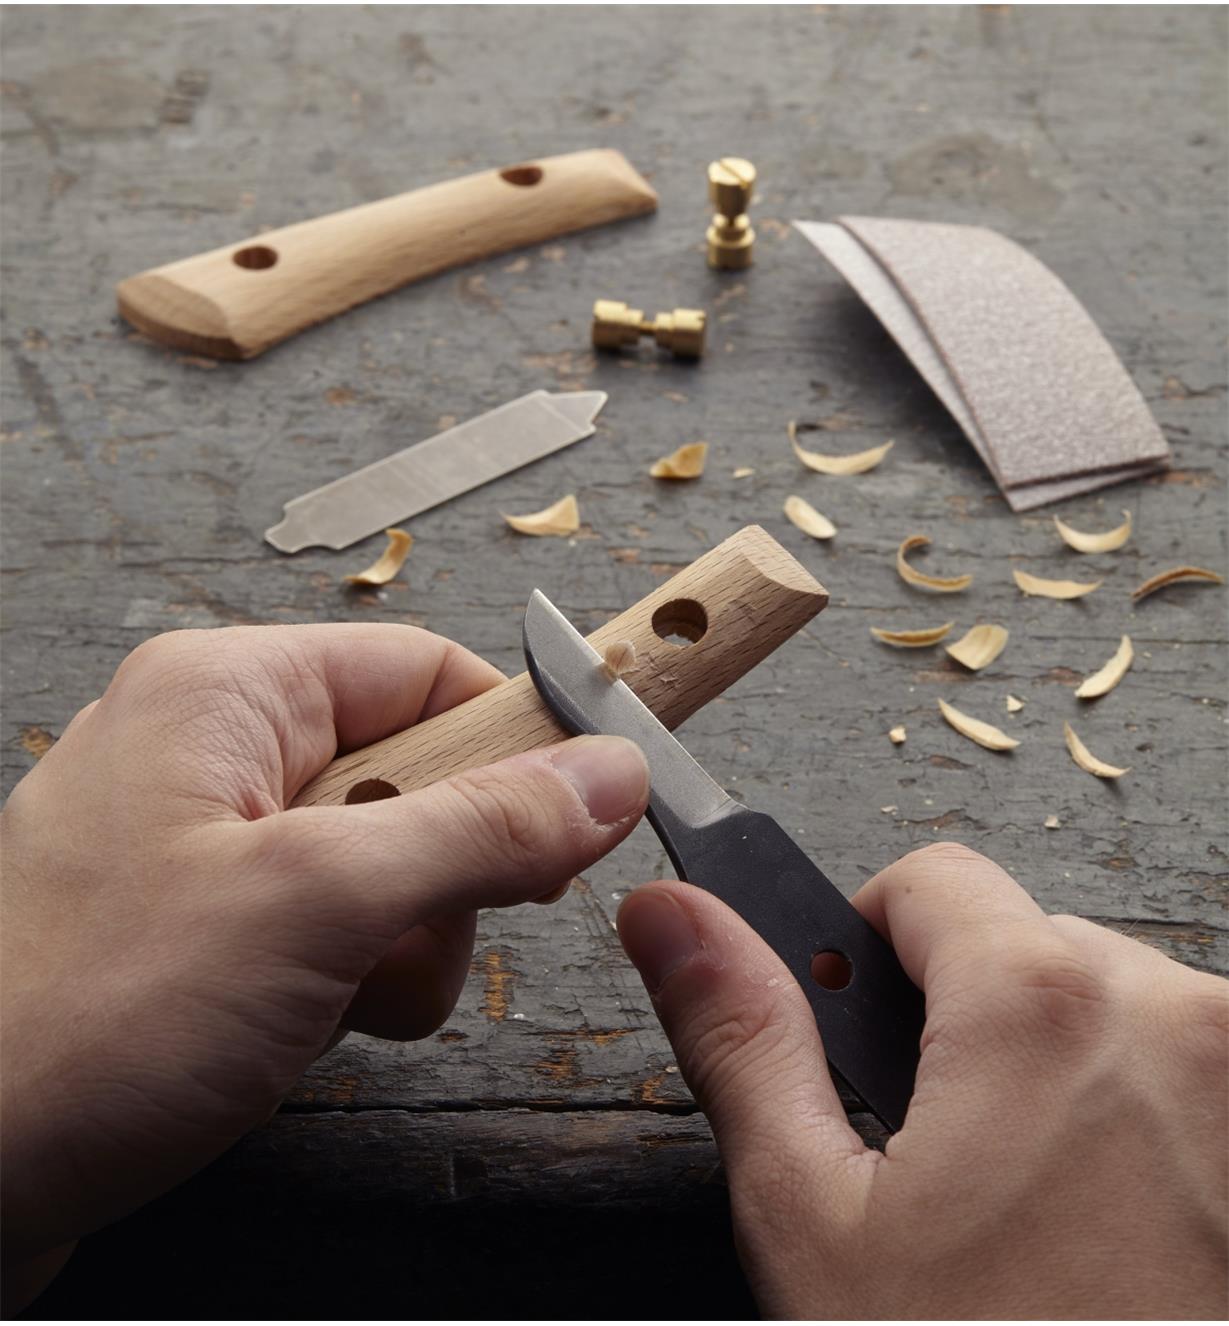 [Image: 60K1101-japanese-carving-knife-kit-u-0078.jpg]